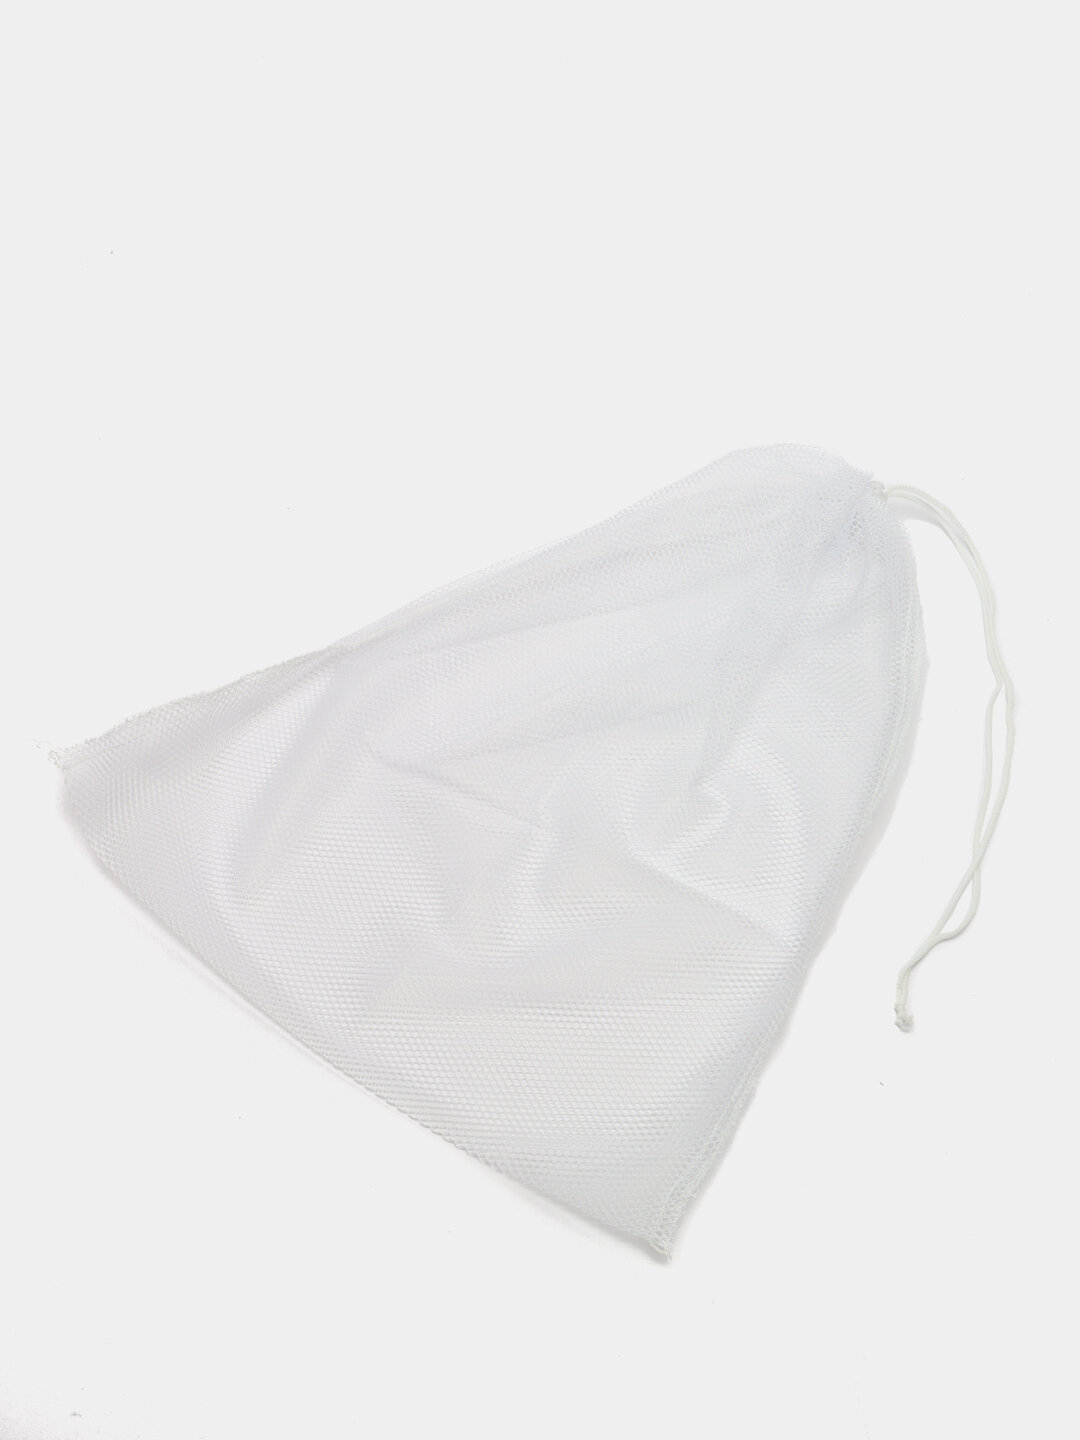 Мешок для стирки белья со шнуром, 38х50 см, цвет белый